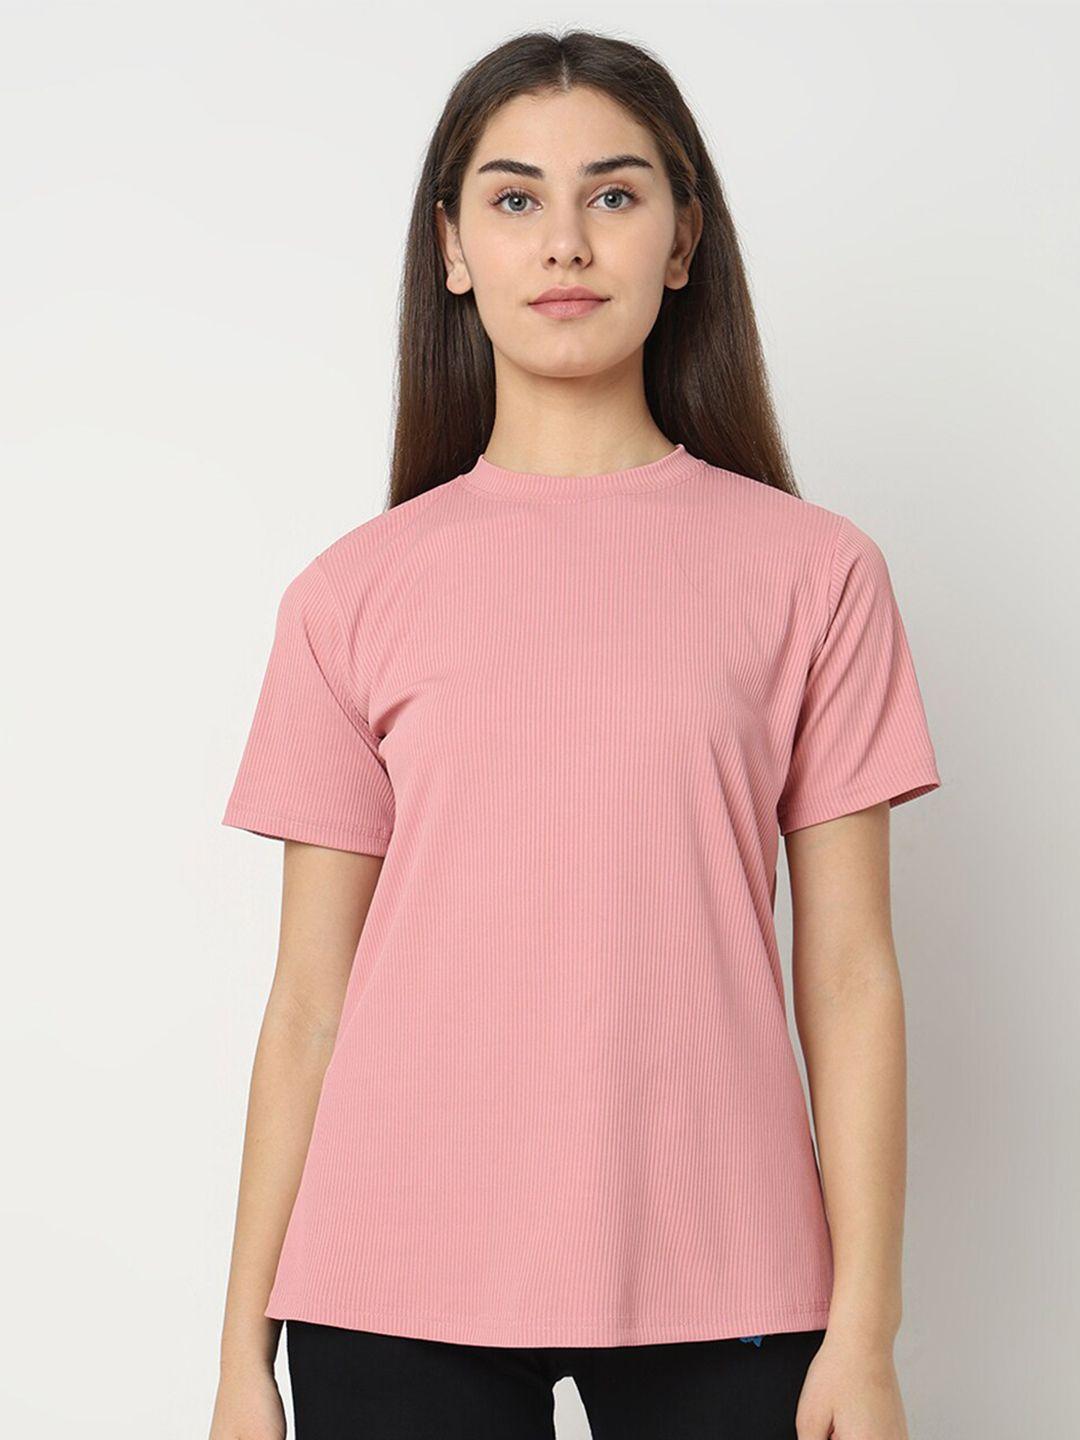 smarty pants women pink anti odour t-shirt